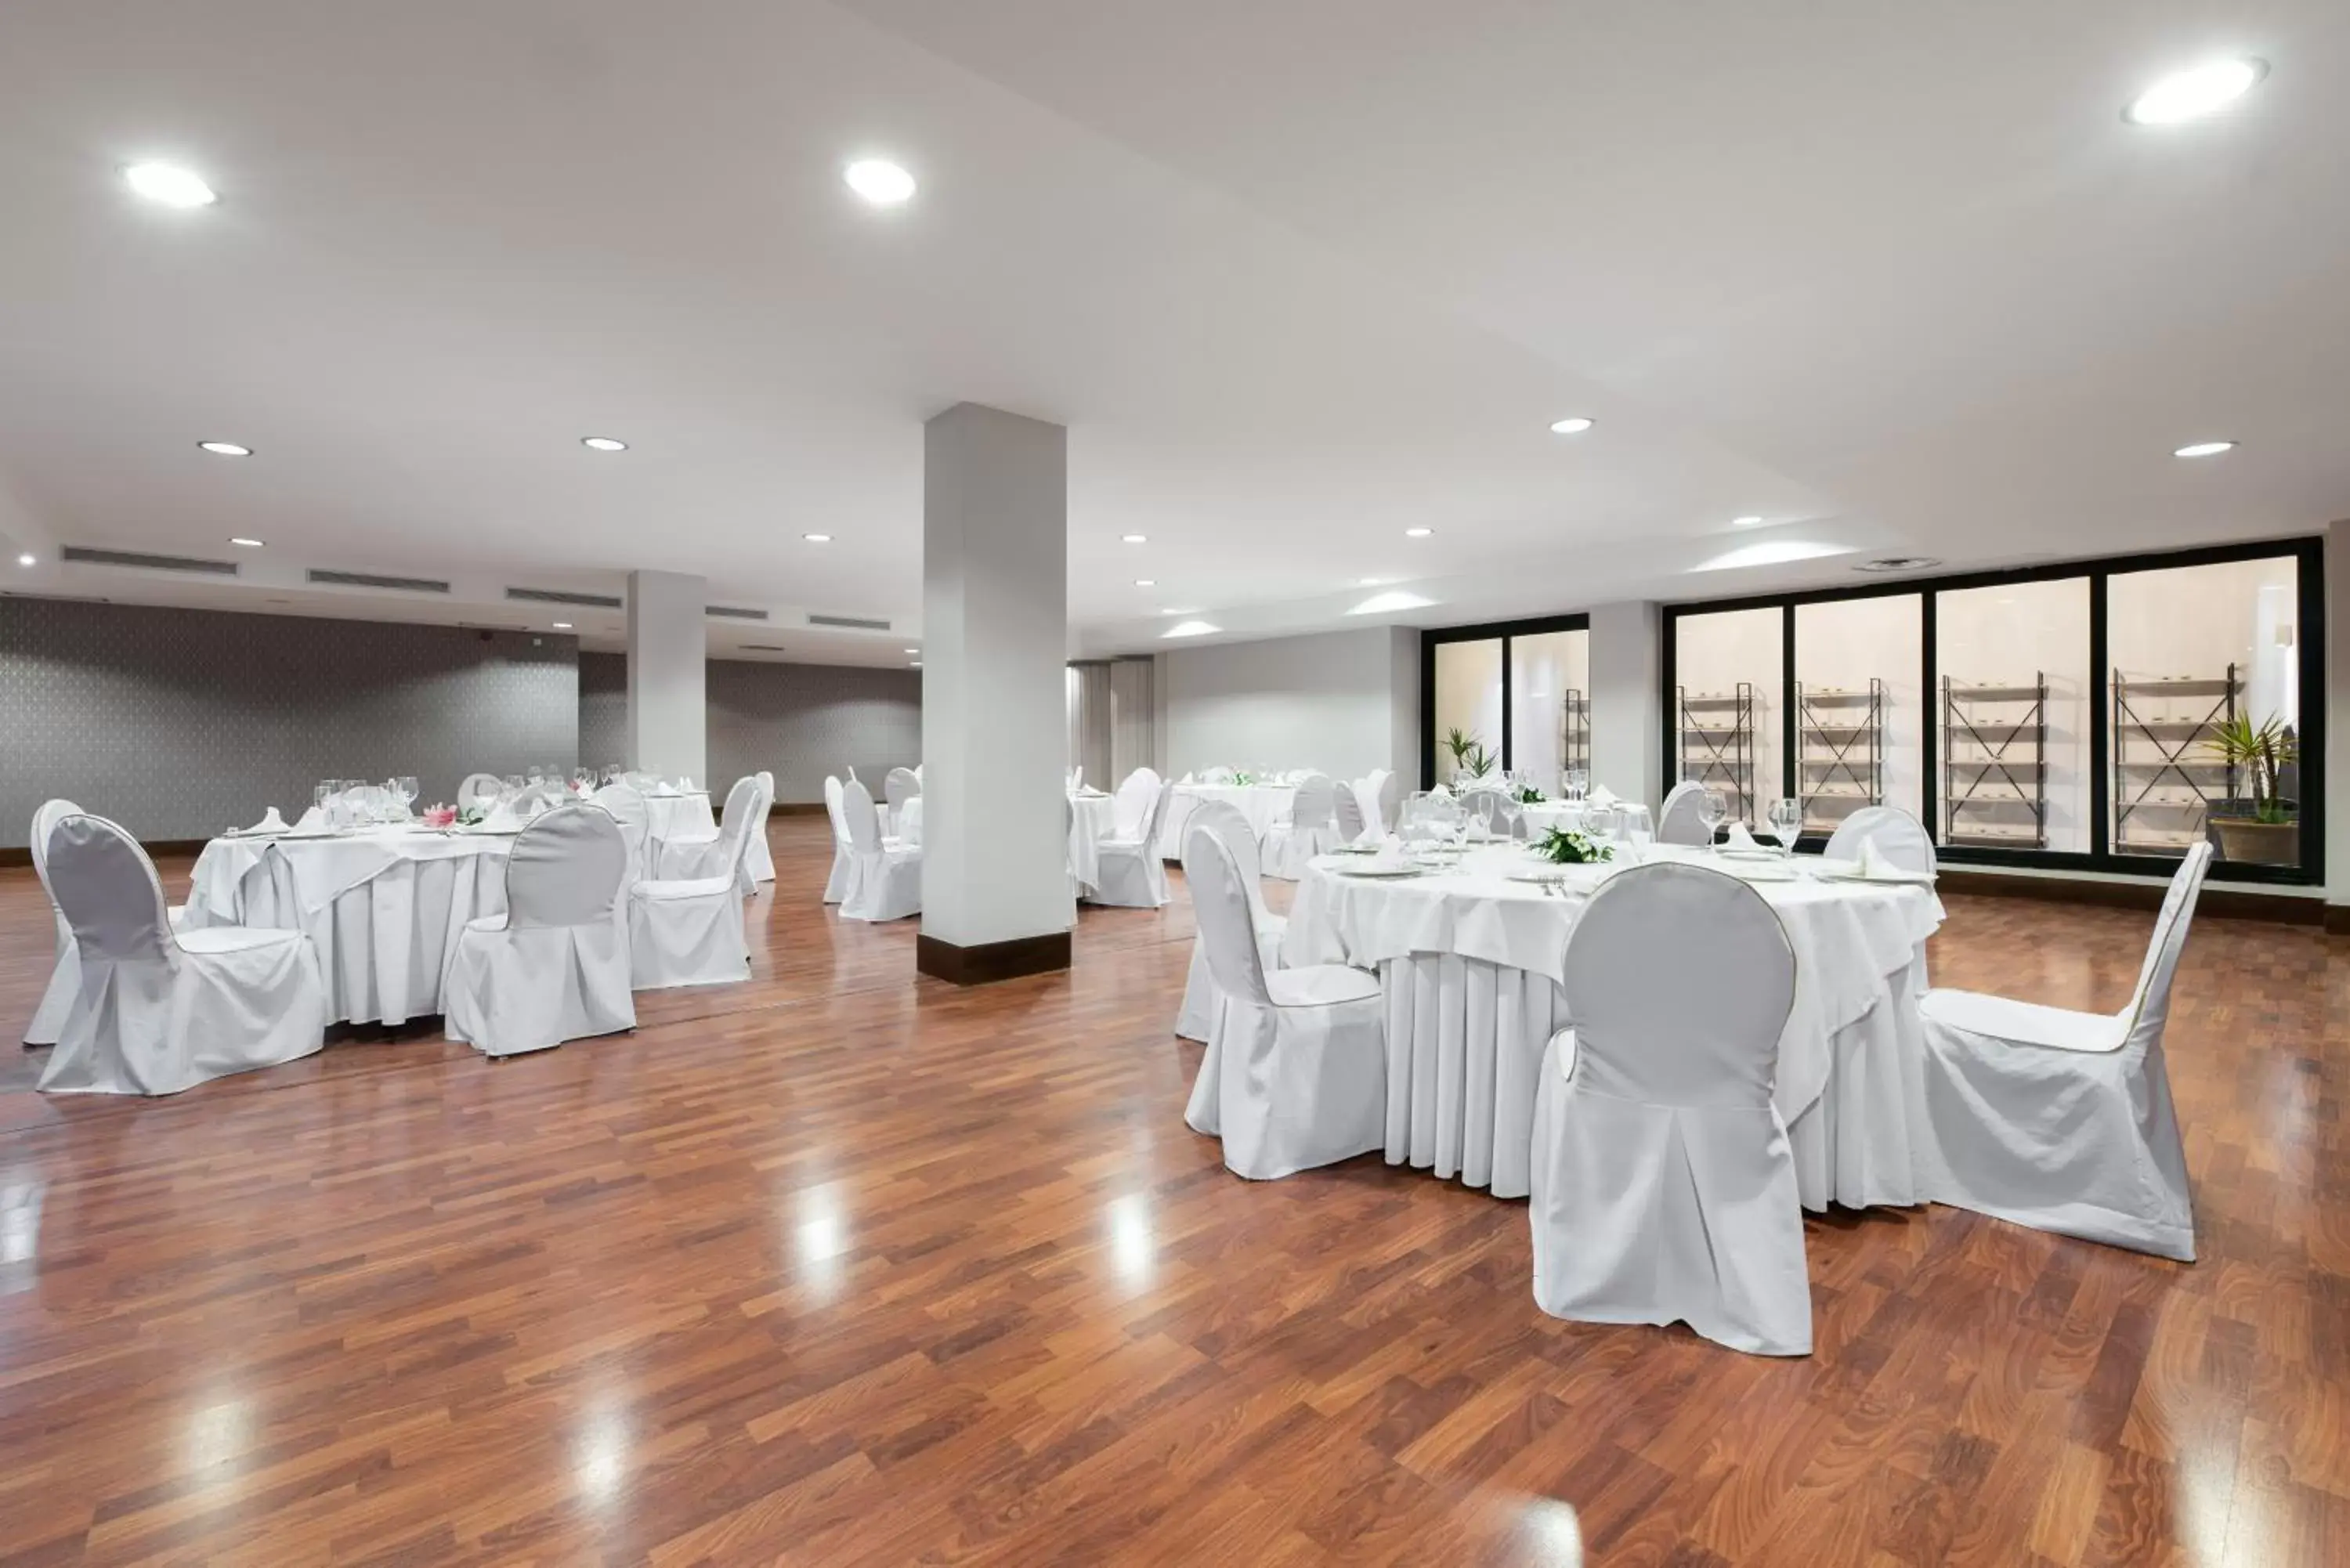 Banquet/Function facilities, Banquet Facilities in Exe Agora Cáceres